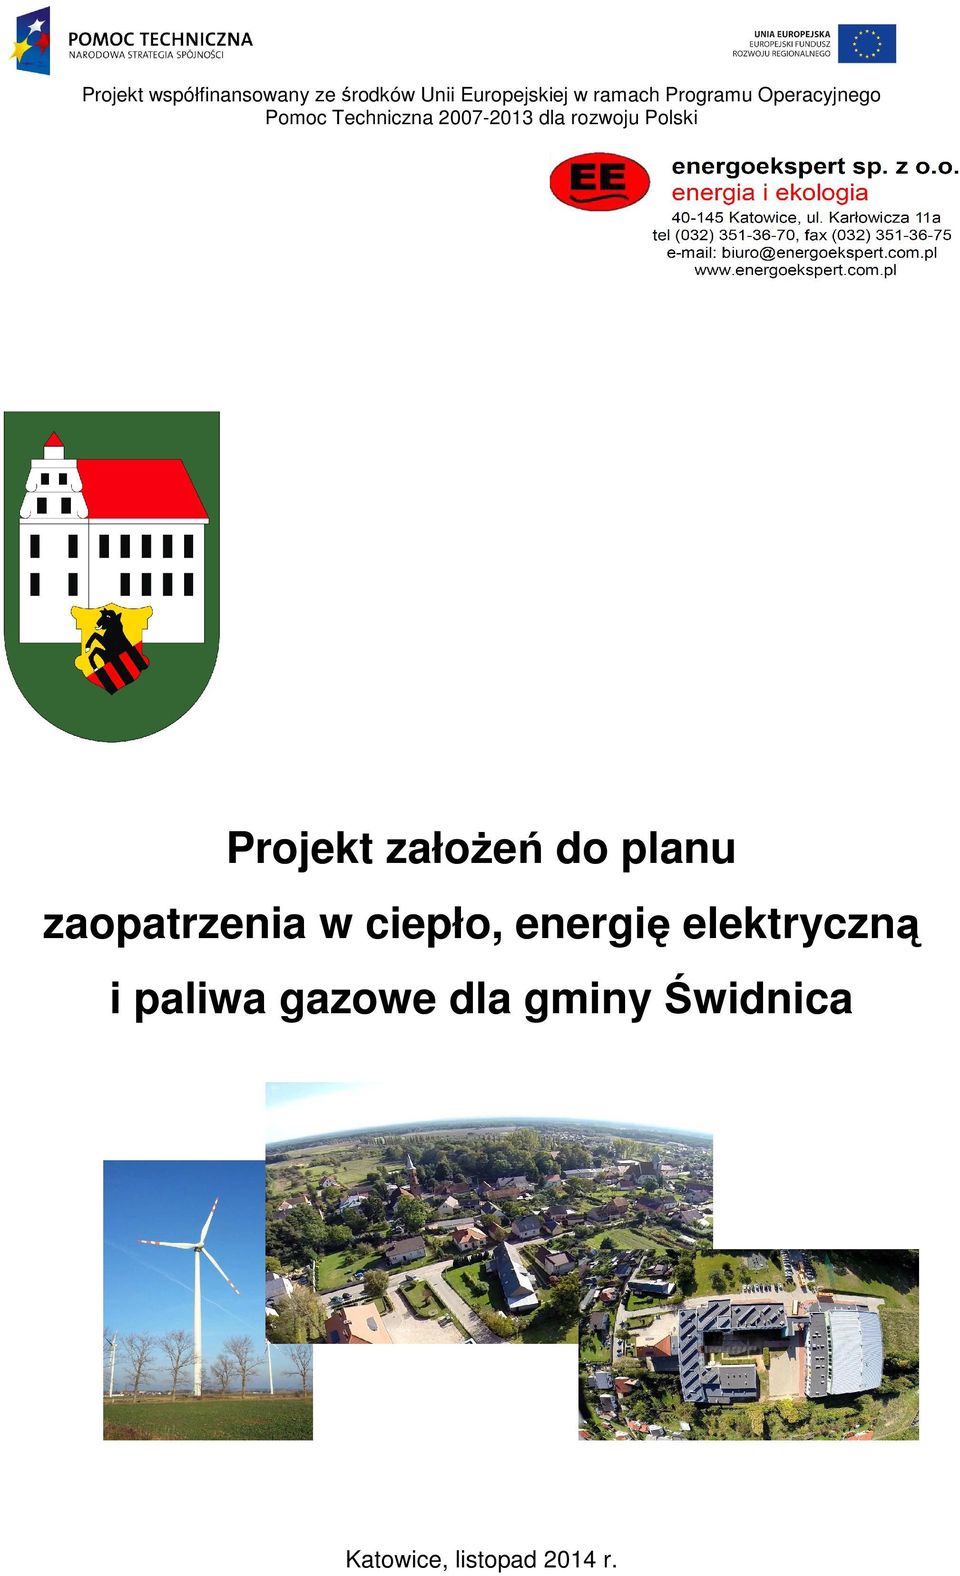 Polski Projekt załoŝeń do planu zaopatrzenia w ciepło, energię